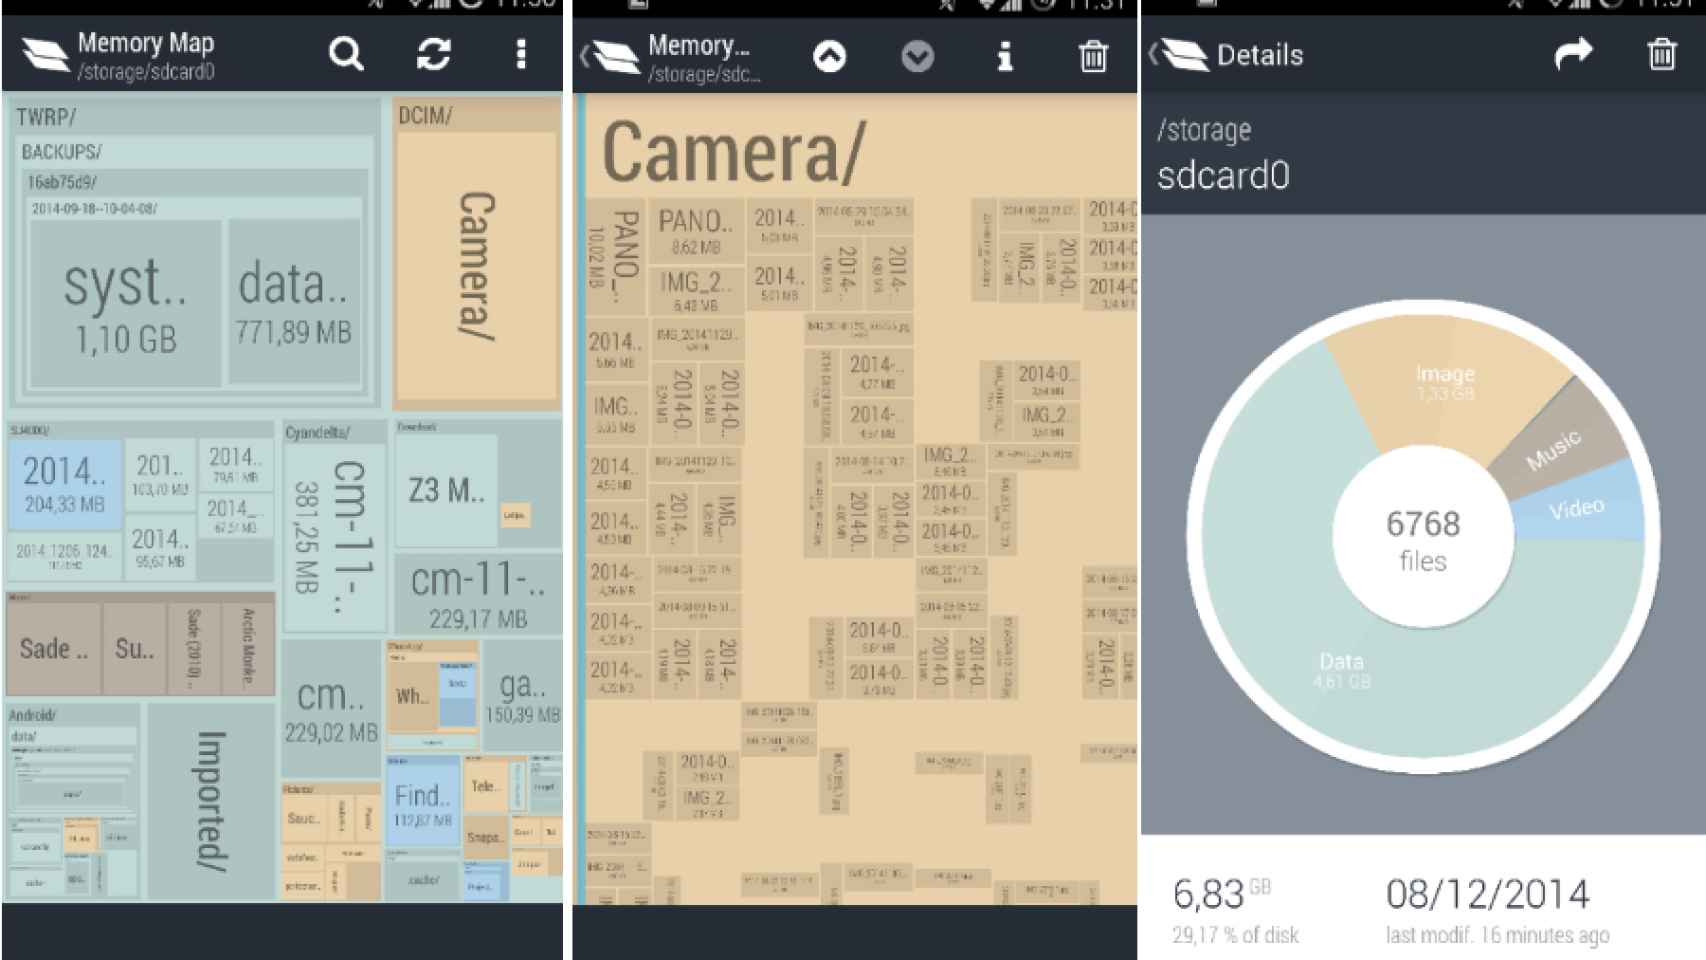 Memory Map te ofrece una visión global de la memoria de tu Android